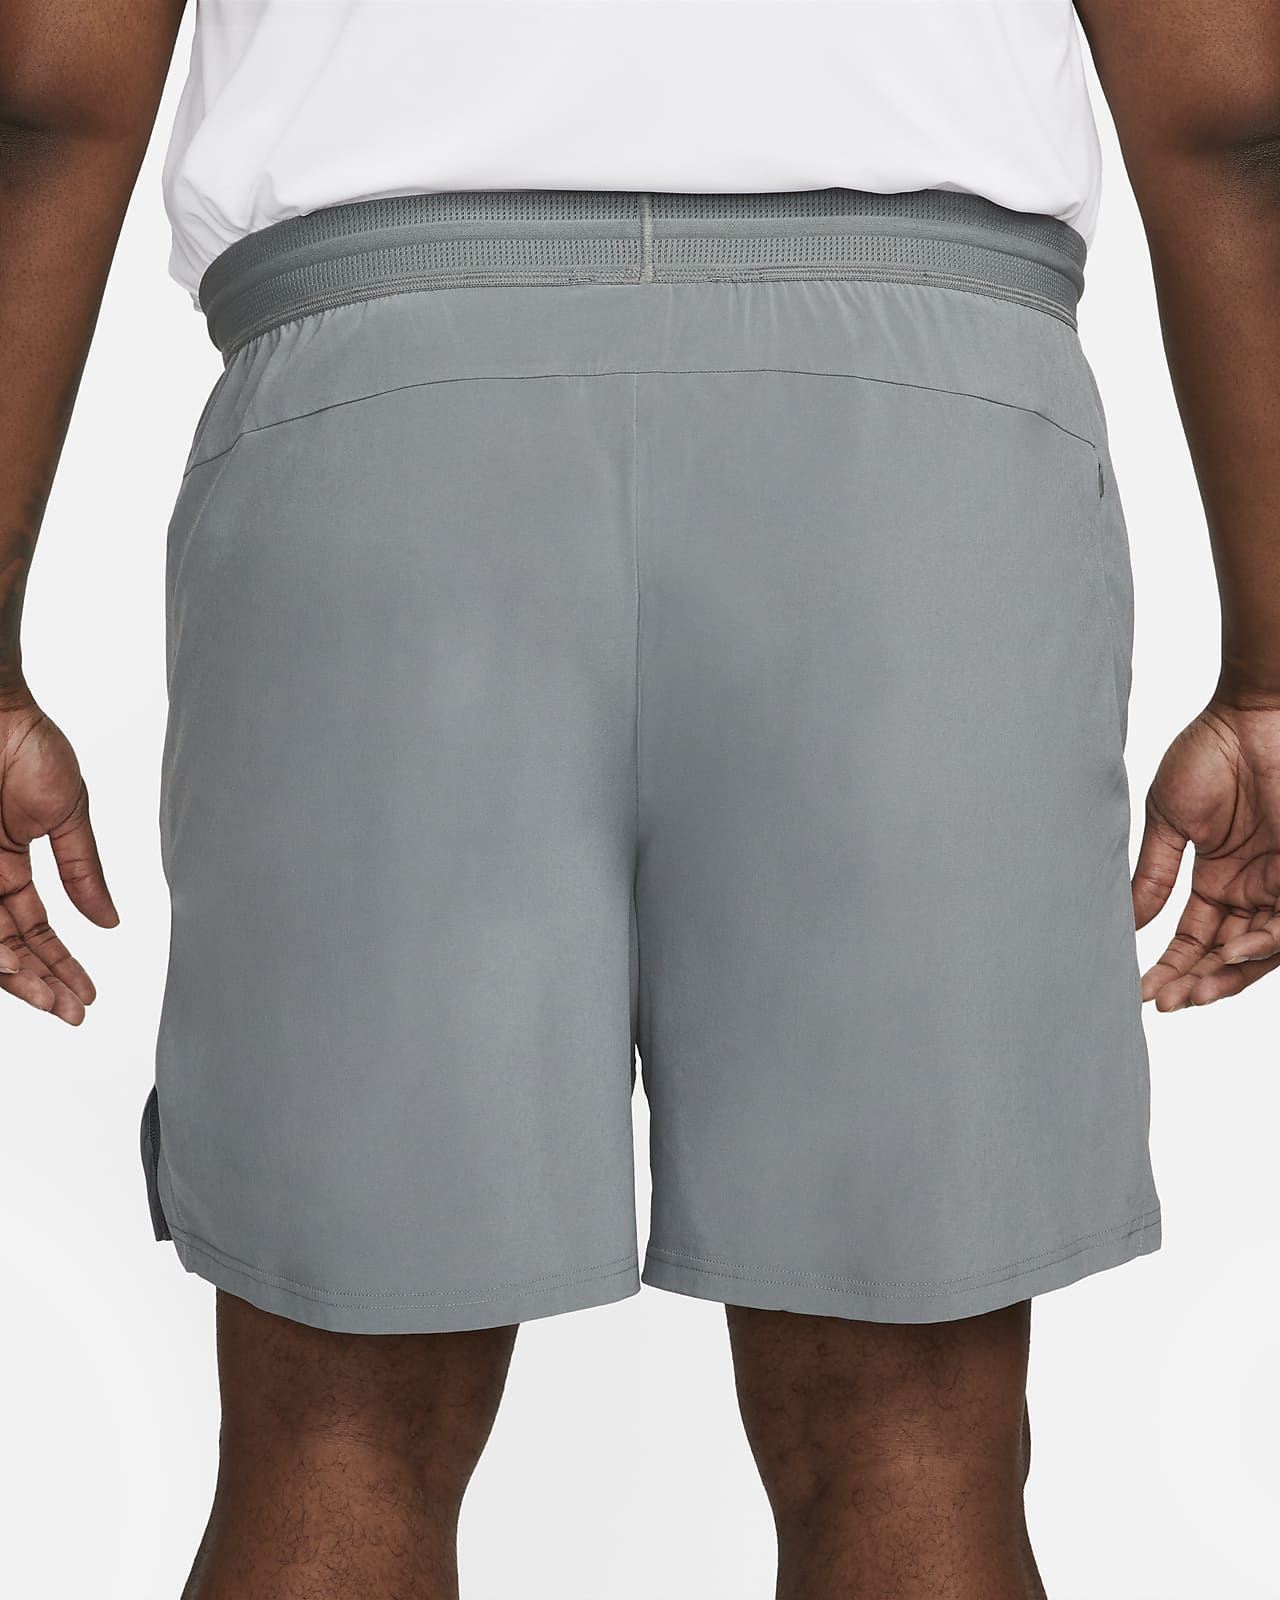 Shorts Nike Pro Dri-FIT Flex Vent Max Masculino - Compre Agora